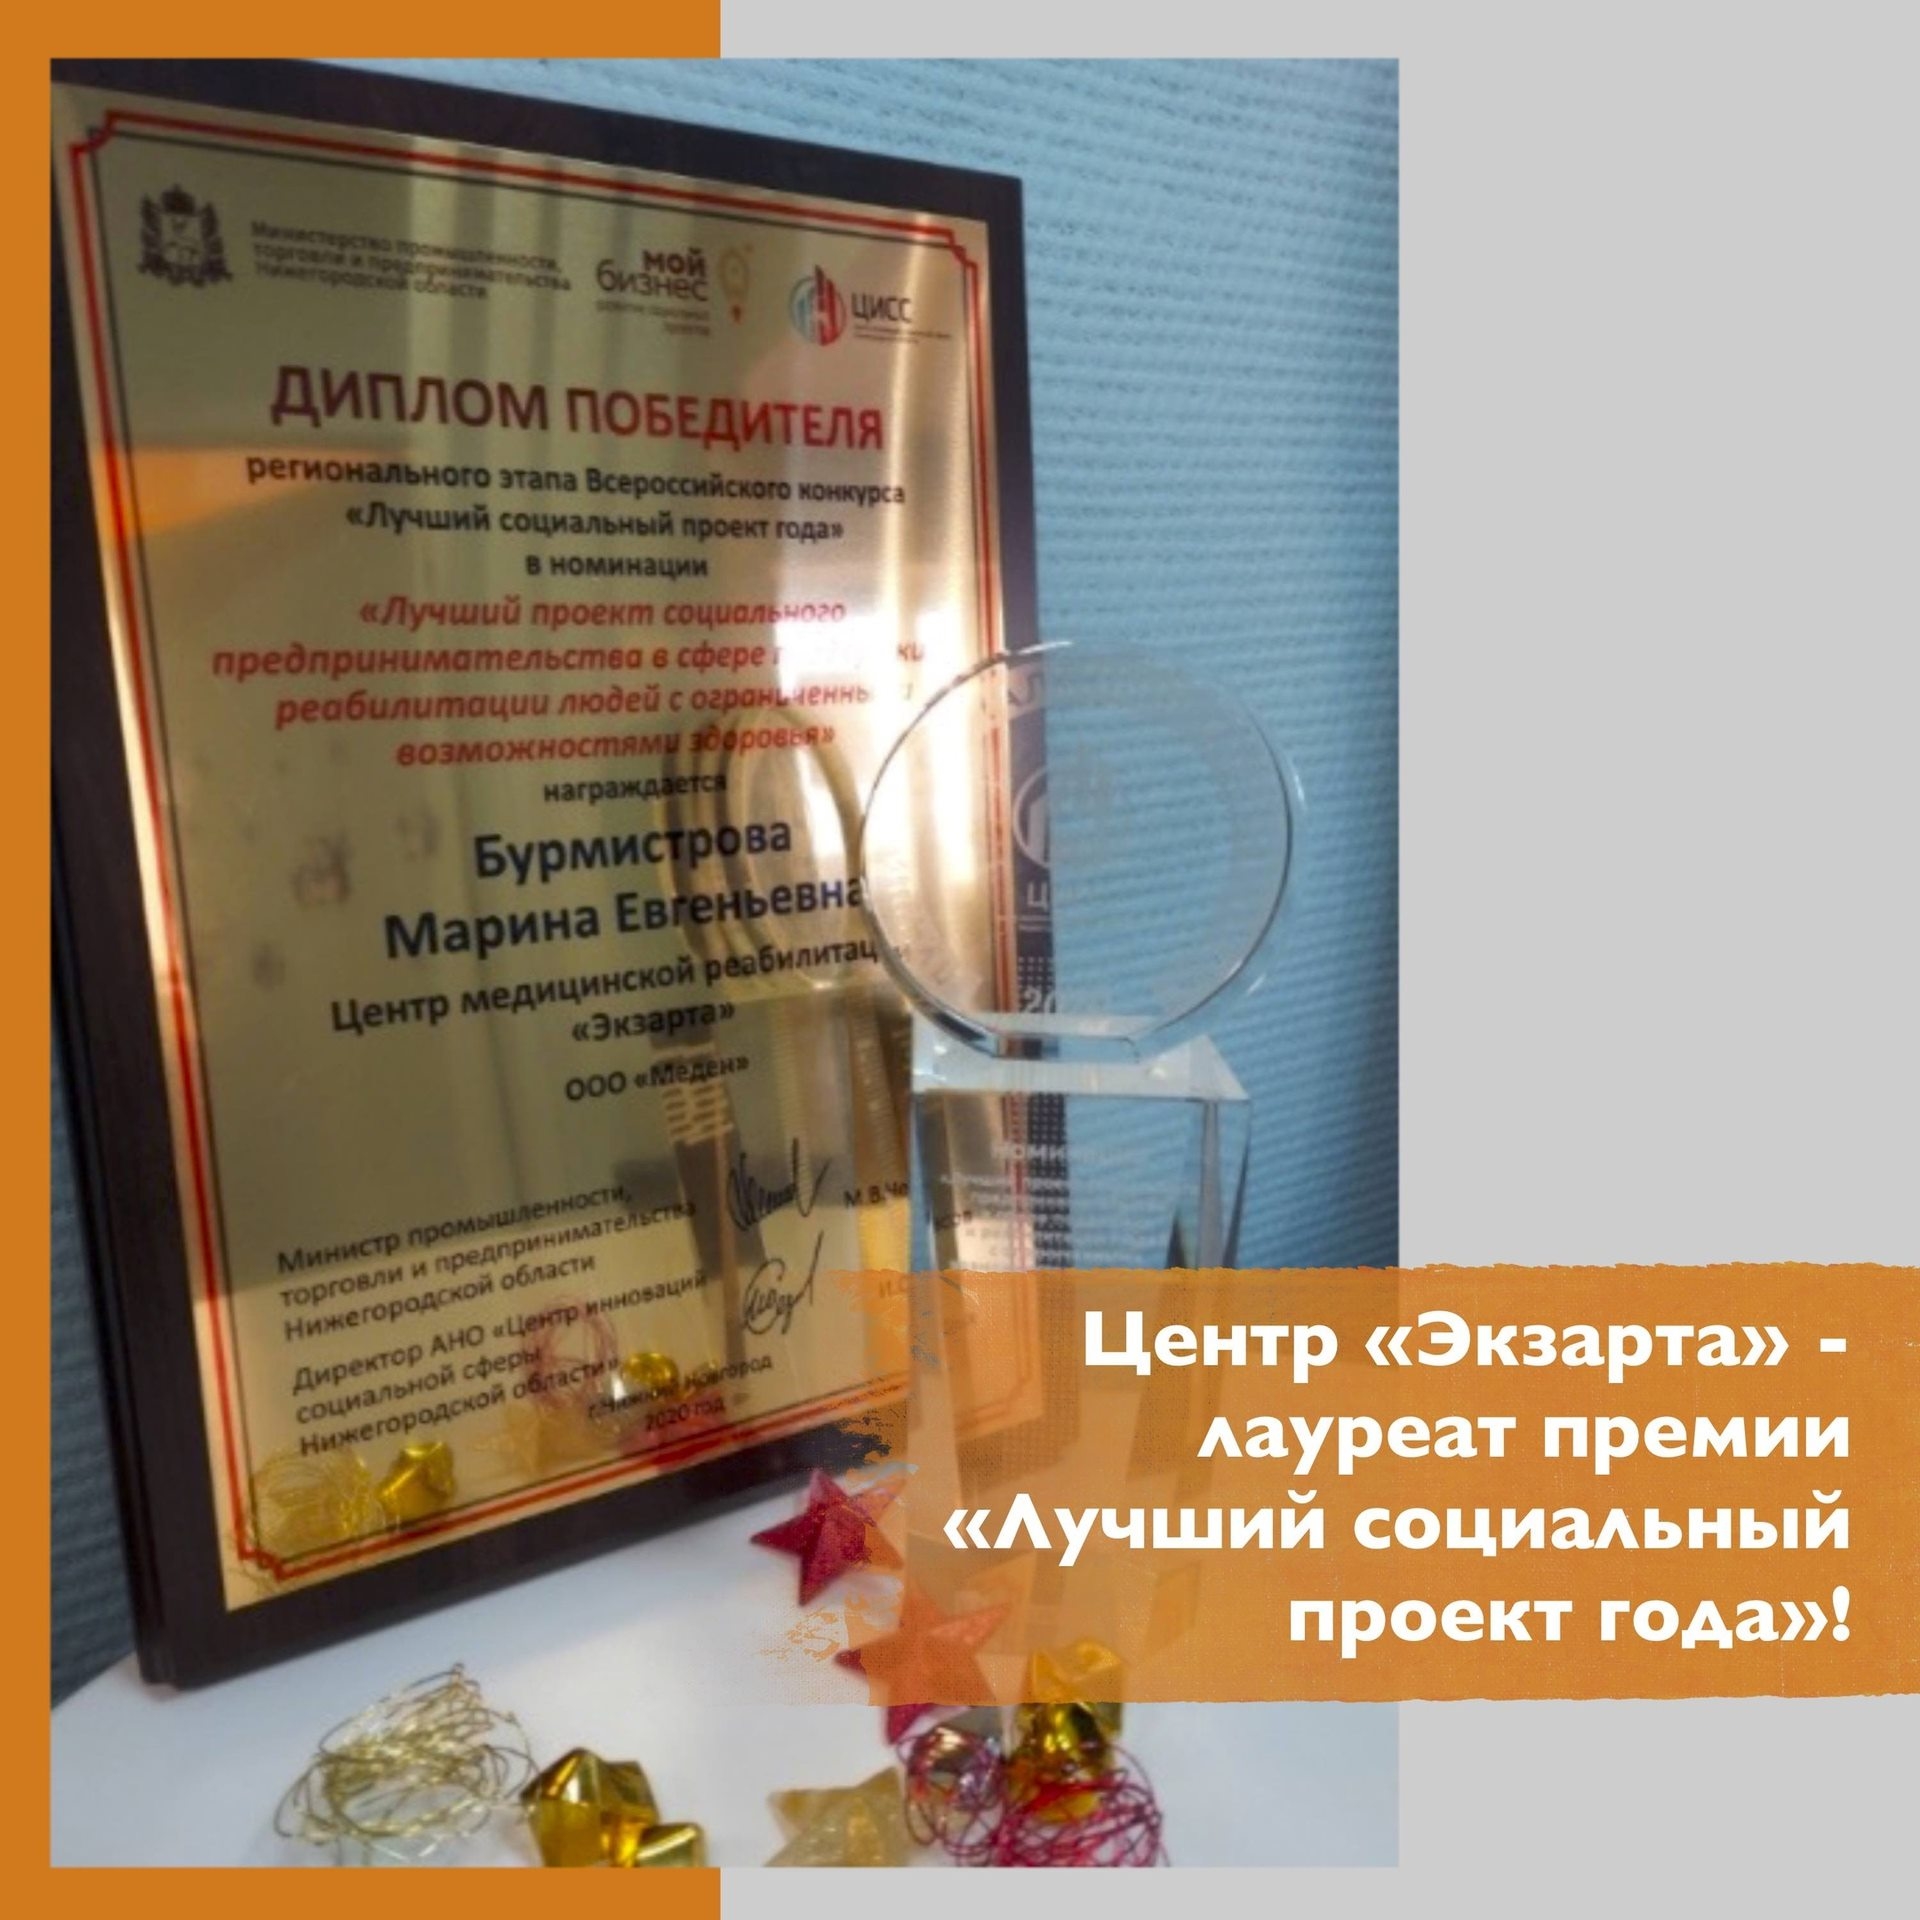 Центр «Экзарта» - лауреат премии «Лучший социальный проект года»!